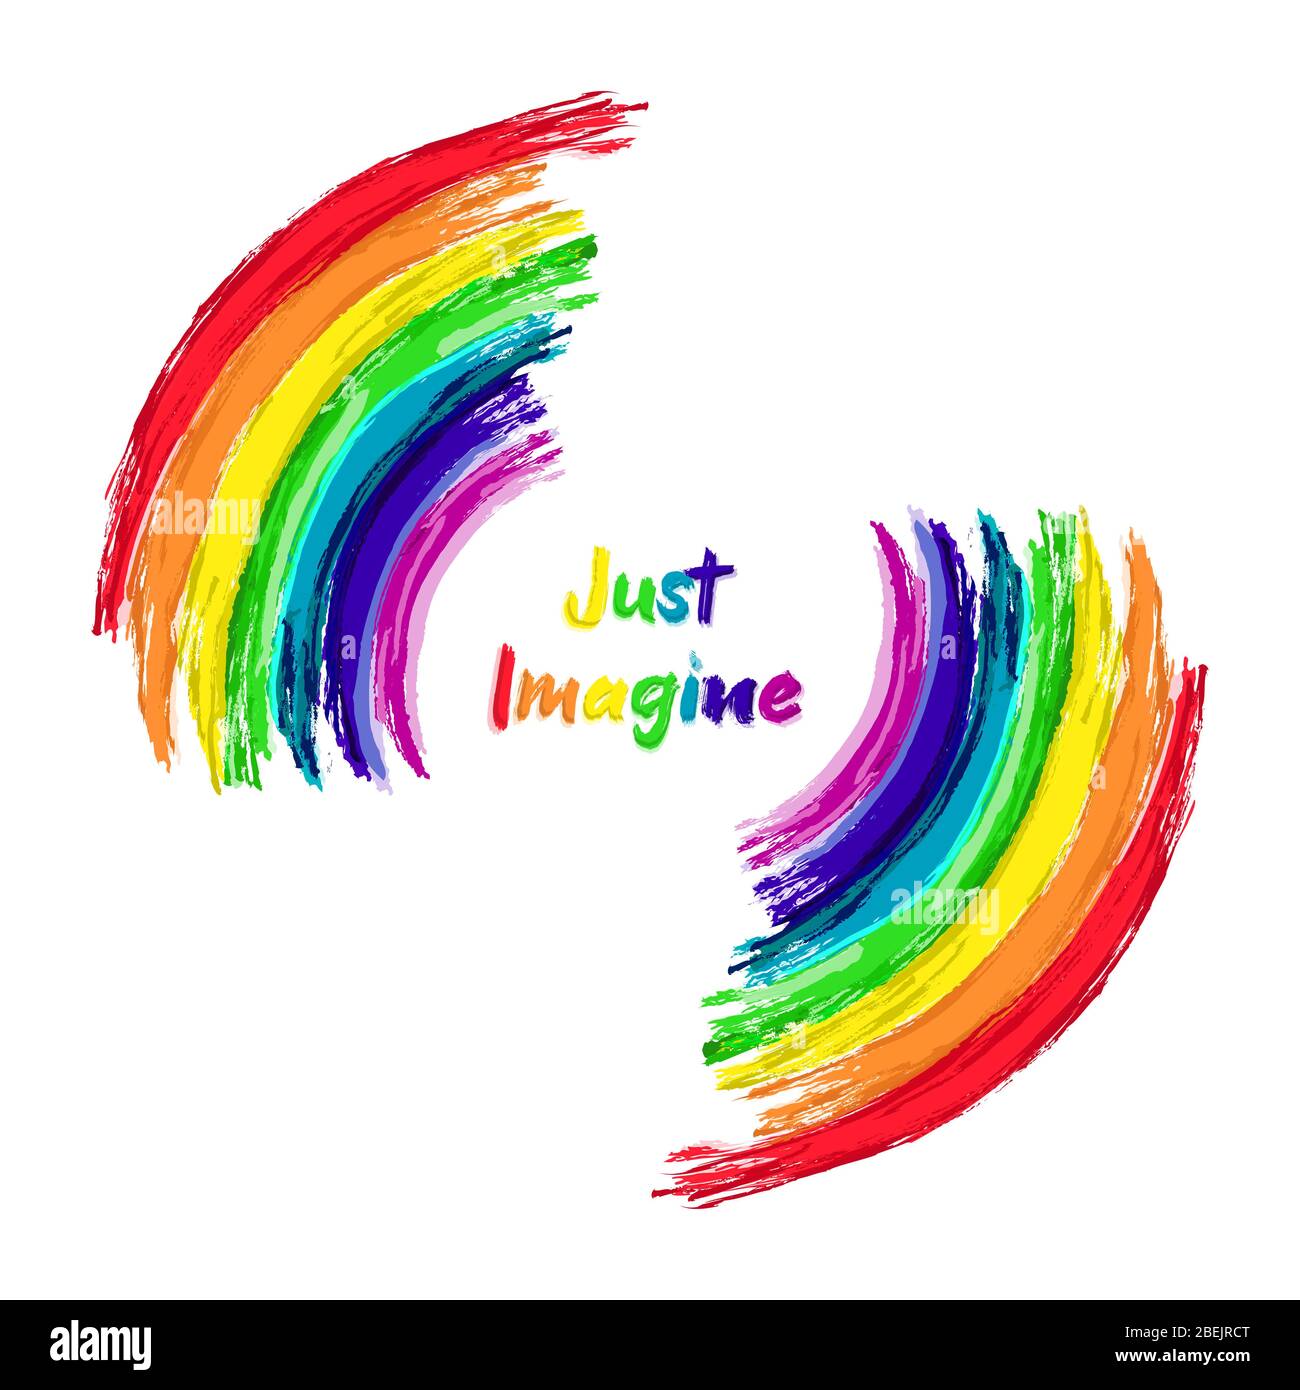 Imagínese pinturas arcoiris con texto inspirador aislado sobre fondo blanco. Vibraciones positivas, ilustración de mensaje motivacional colorido. Foto de stock